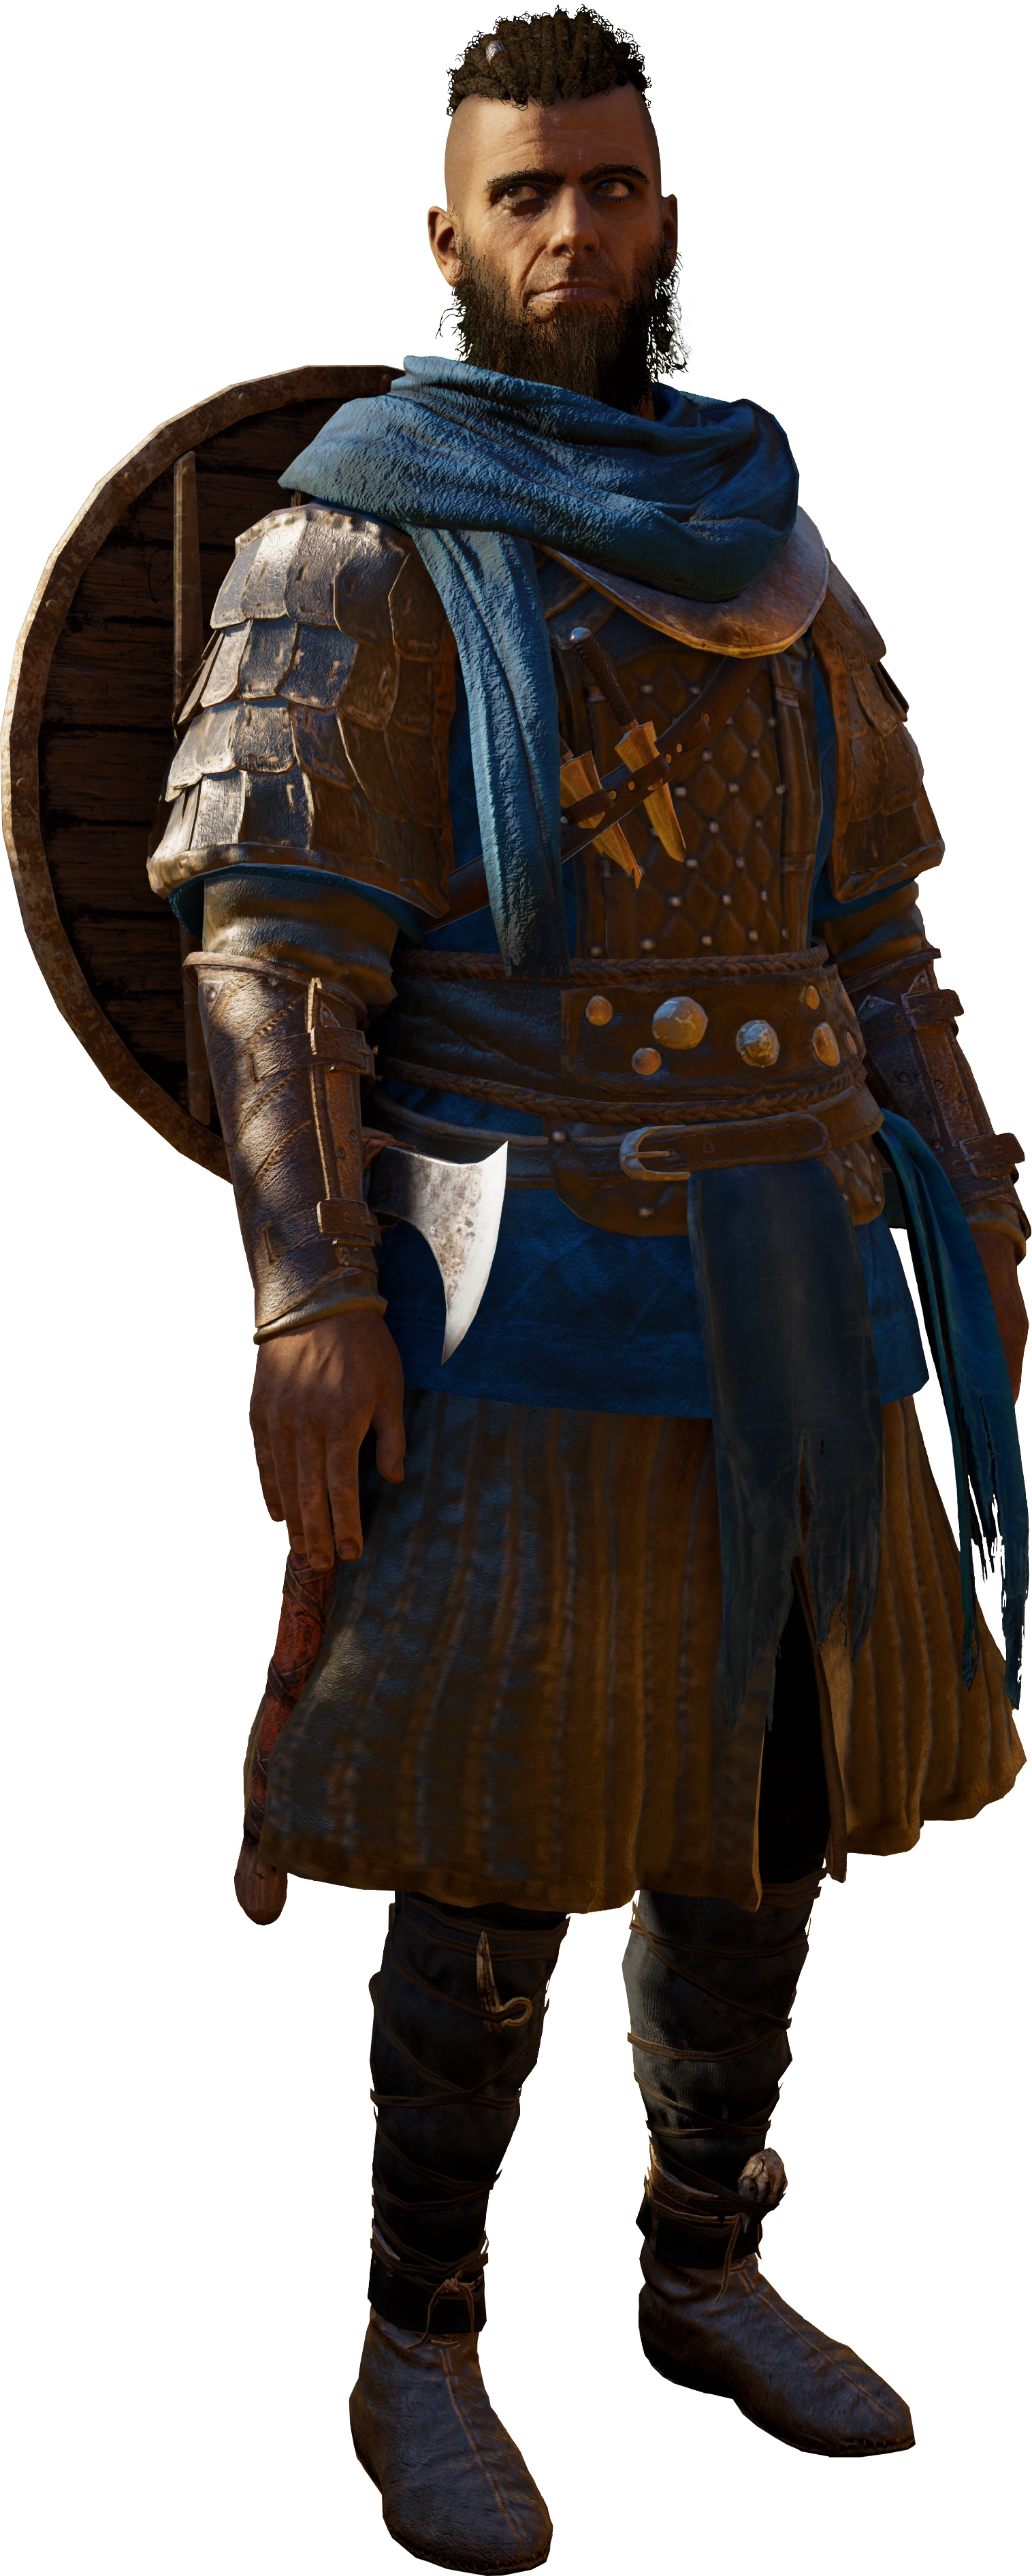 Dawn of Ragnarök, Assassin's Creed Wiki